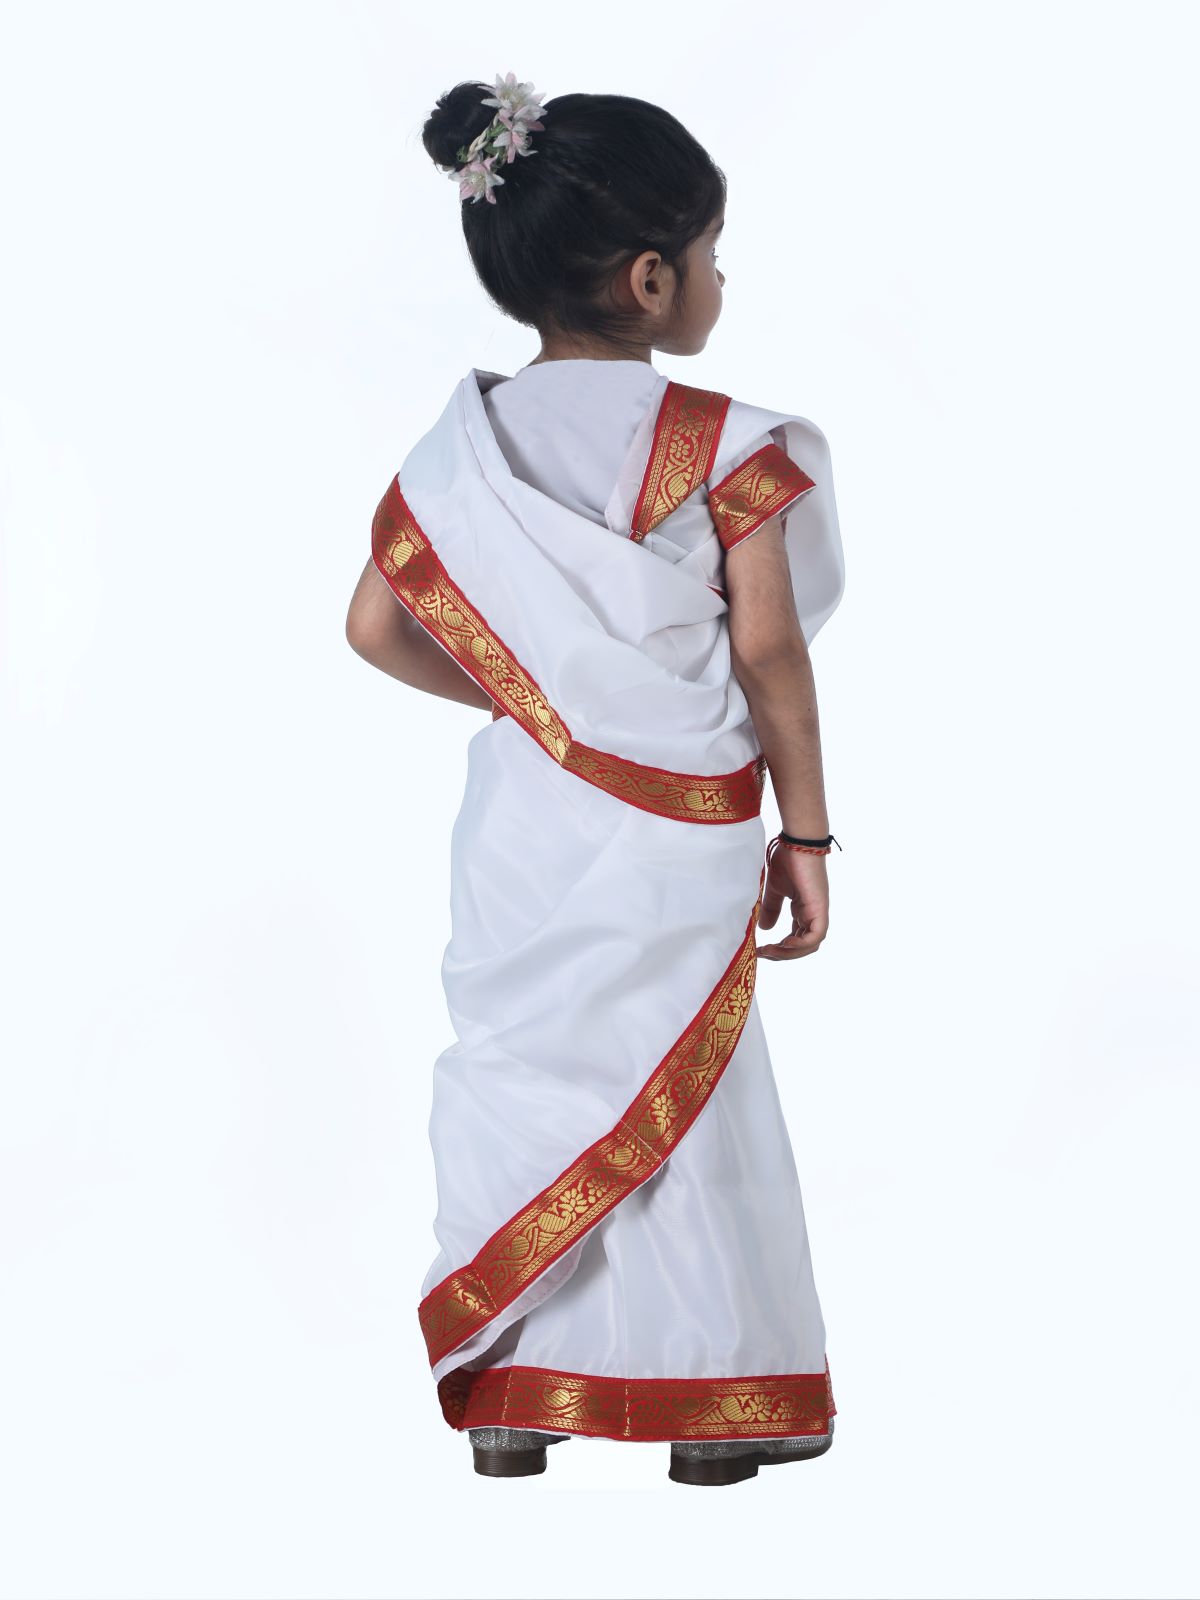 How To Drape Bengali Style Saree-Wear Bengoli Saree/Tie Bengali  Sari/Wrap/Carry - YouTube